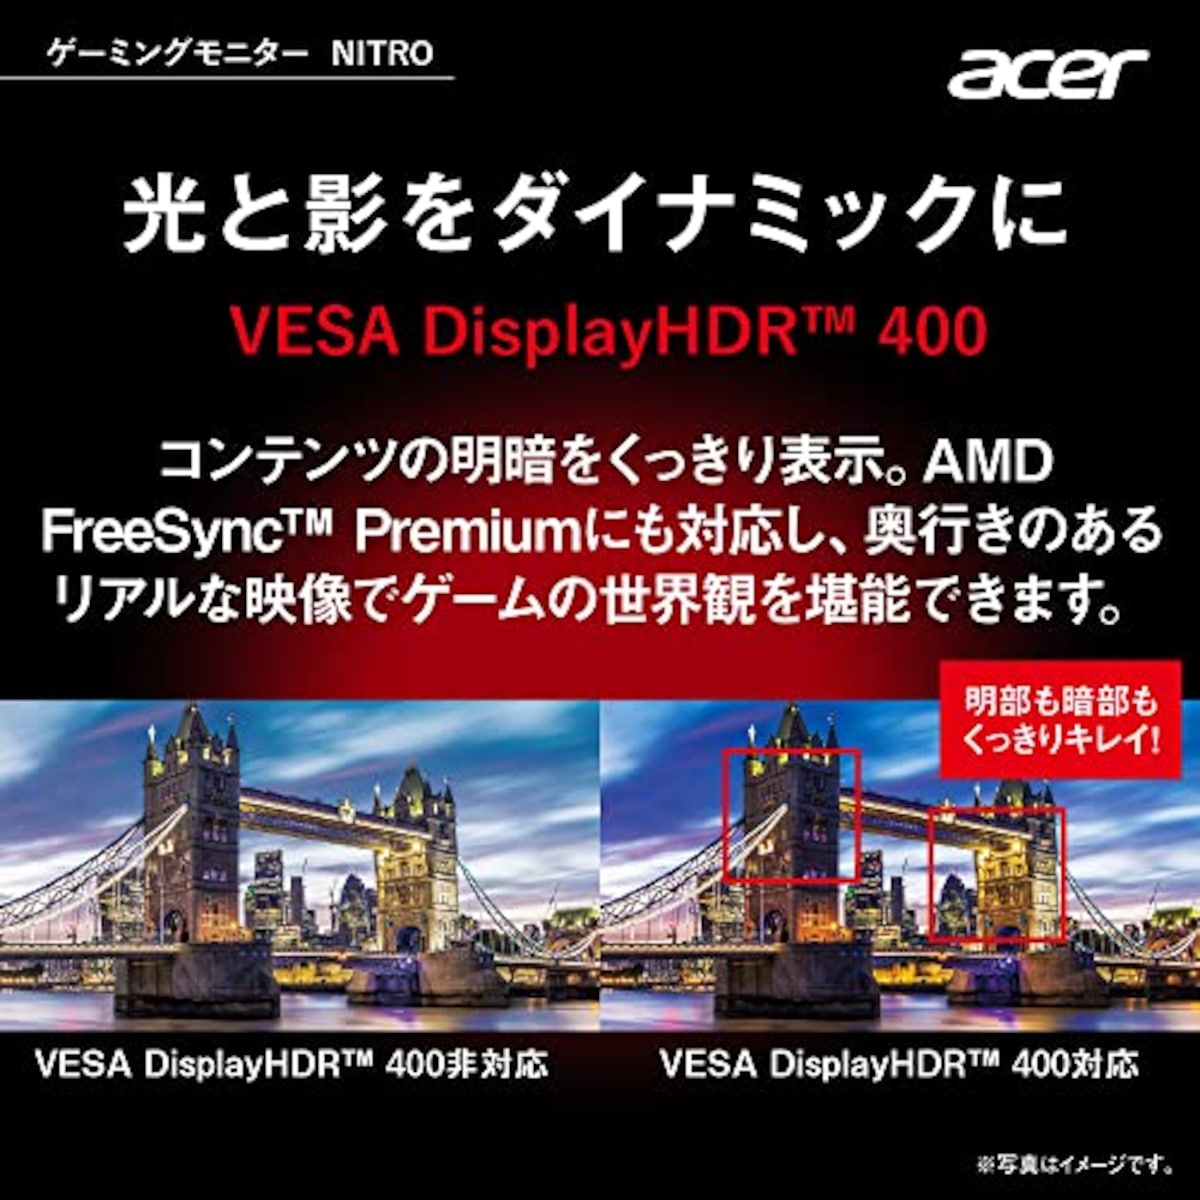  日本エイサー Acer ゲーミングモニター Nitro XZ306CXwmiiiphx 29.5インチ VA 非光沢 湾曲1500R UWFHD ウルトラワイド 1ms(VRB)200Hz(HDMI 180Hz) AMD FreeSync Premium スピーカー搭載 VESA DisplayHDR 400 広い視野角178° VESAマウント対応 高さ調整 ピボット スイベル チルト画像5 